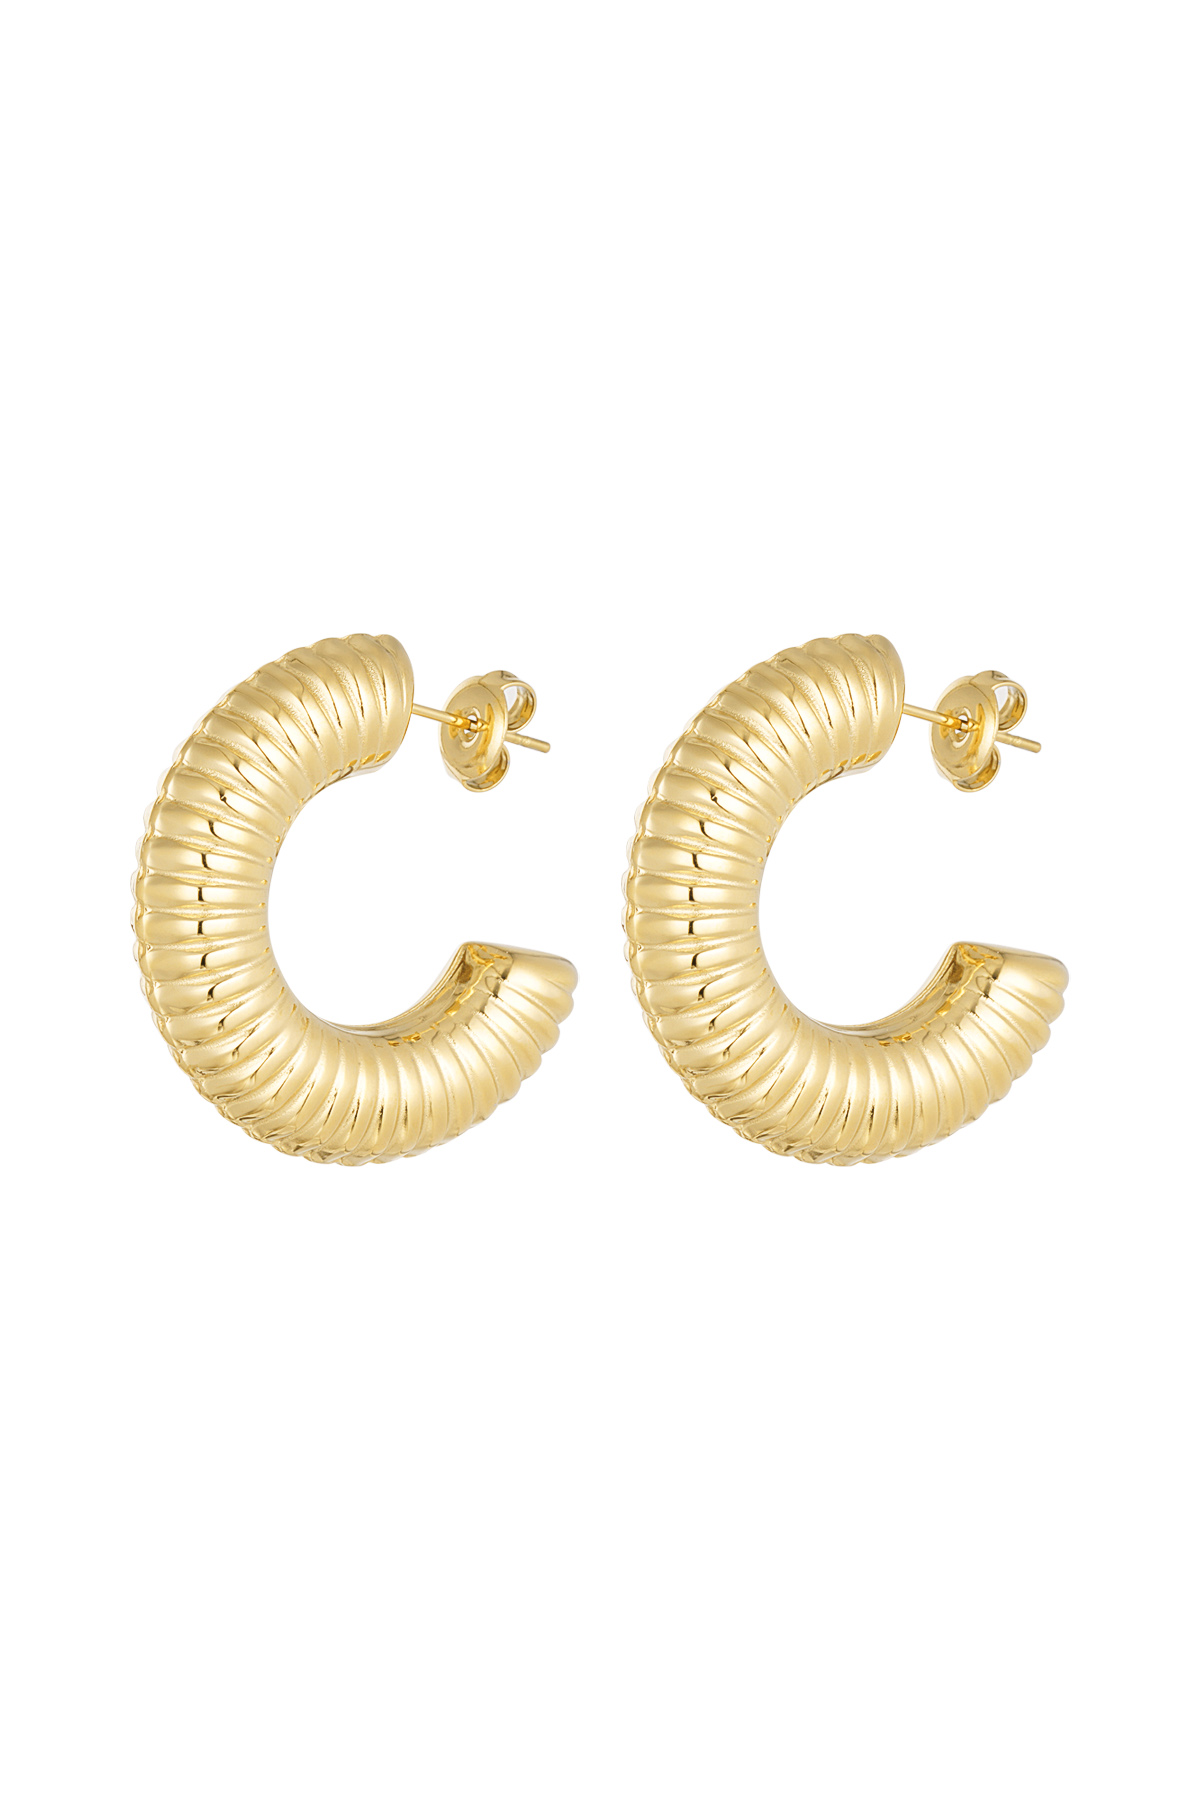 Striped earrings - gold 